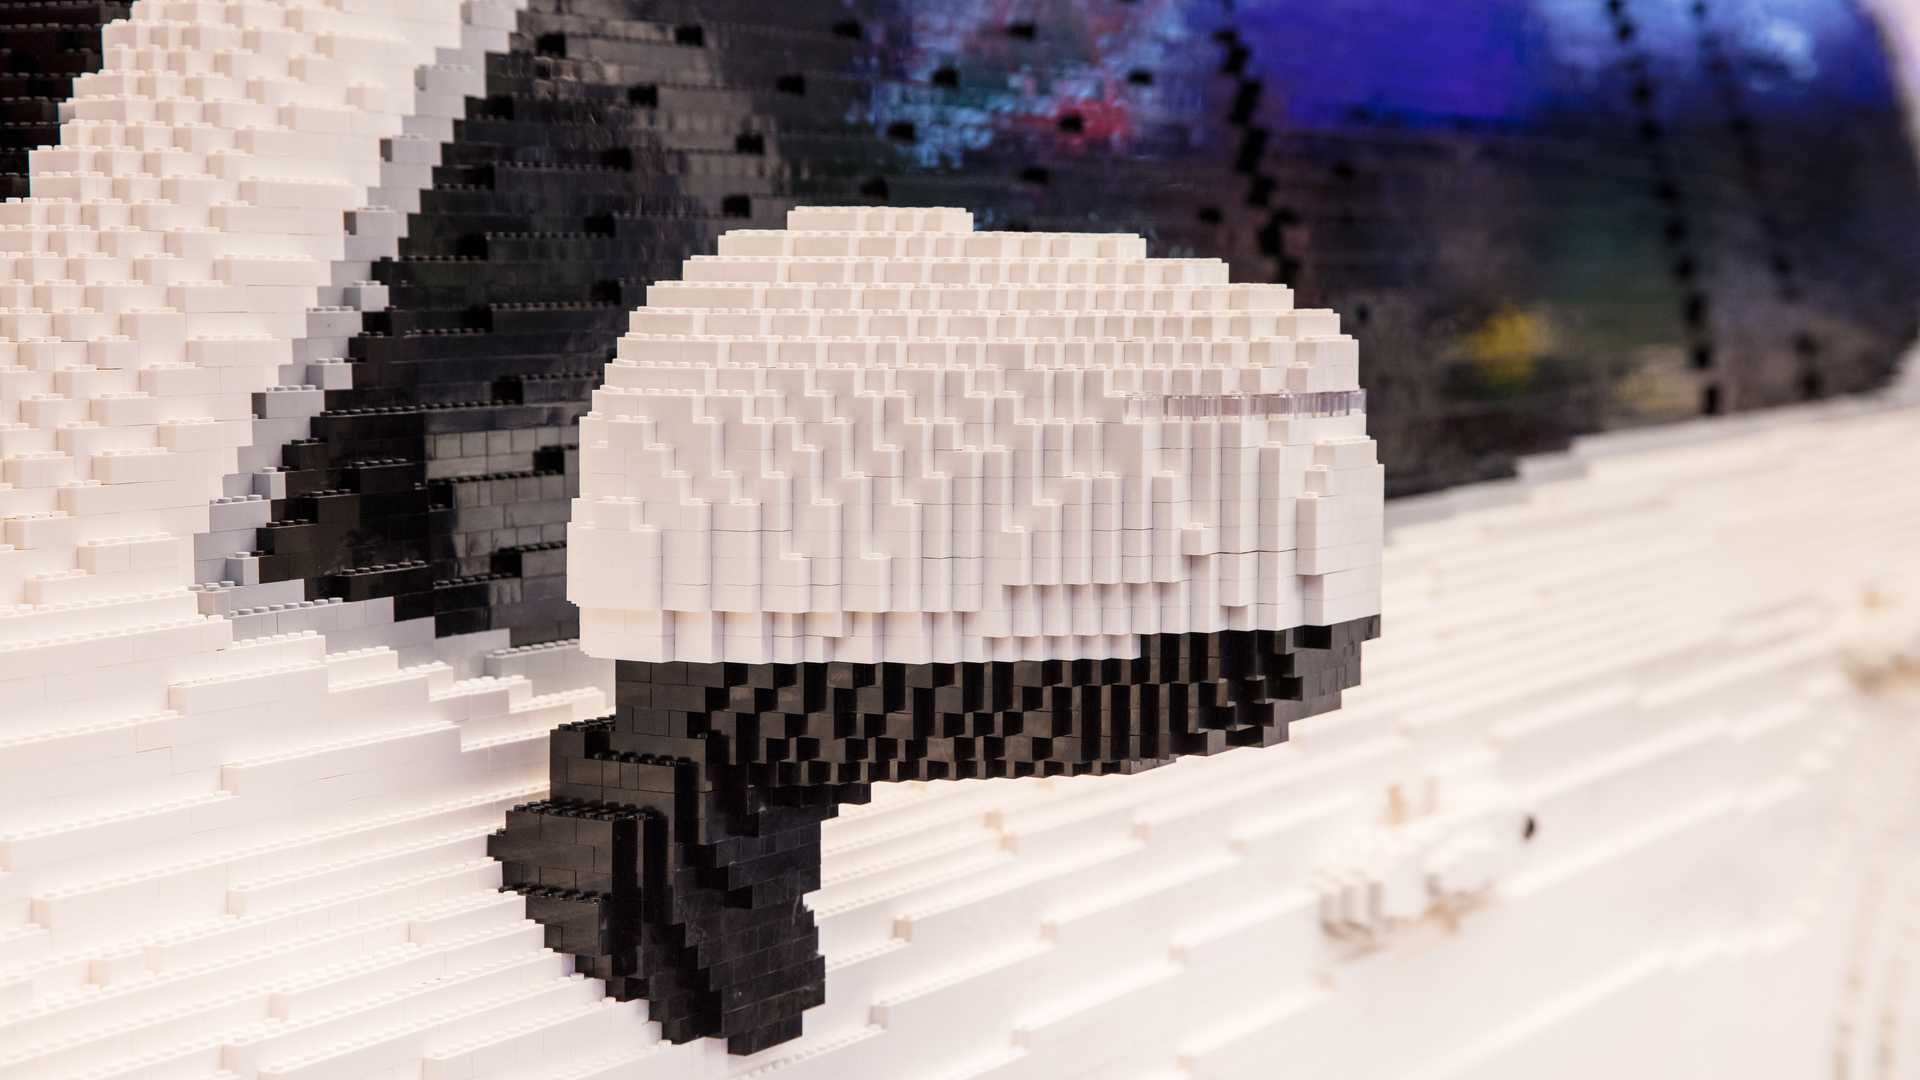 Посмотрите на полноразмерный Toyota Land Cruiser 300 из Lego